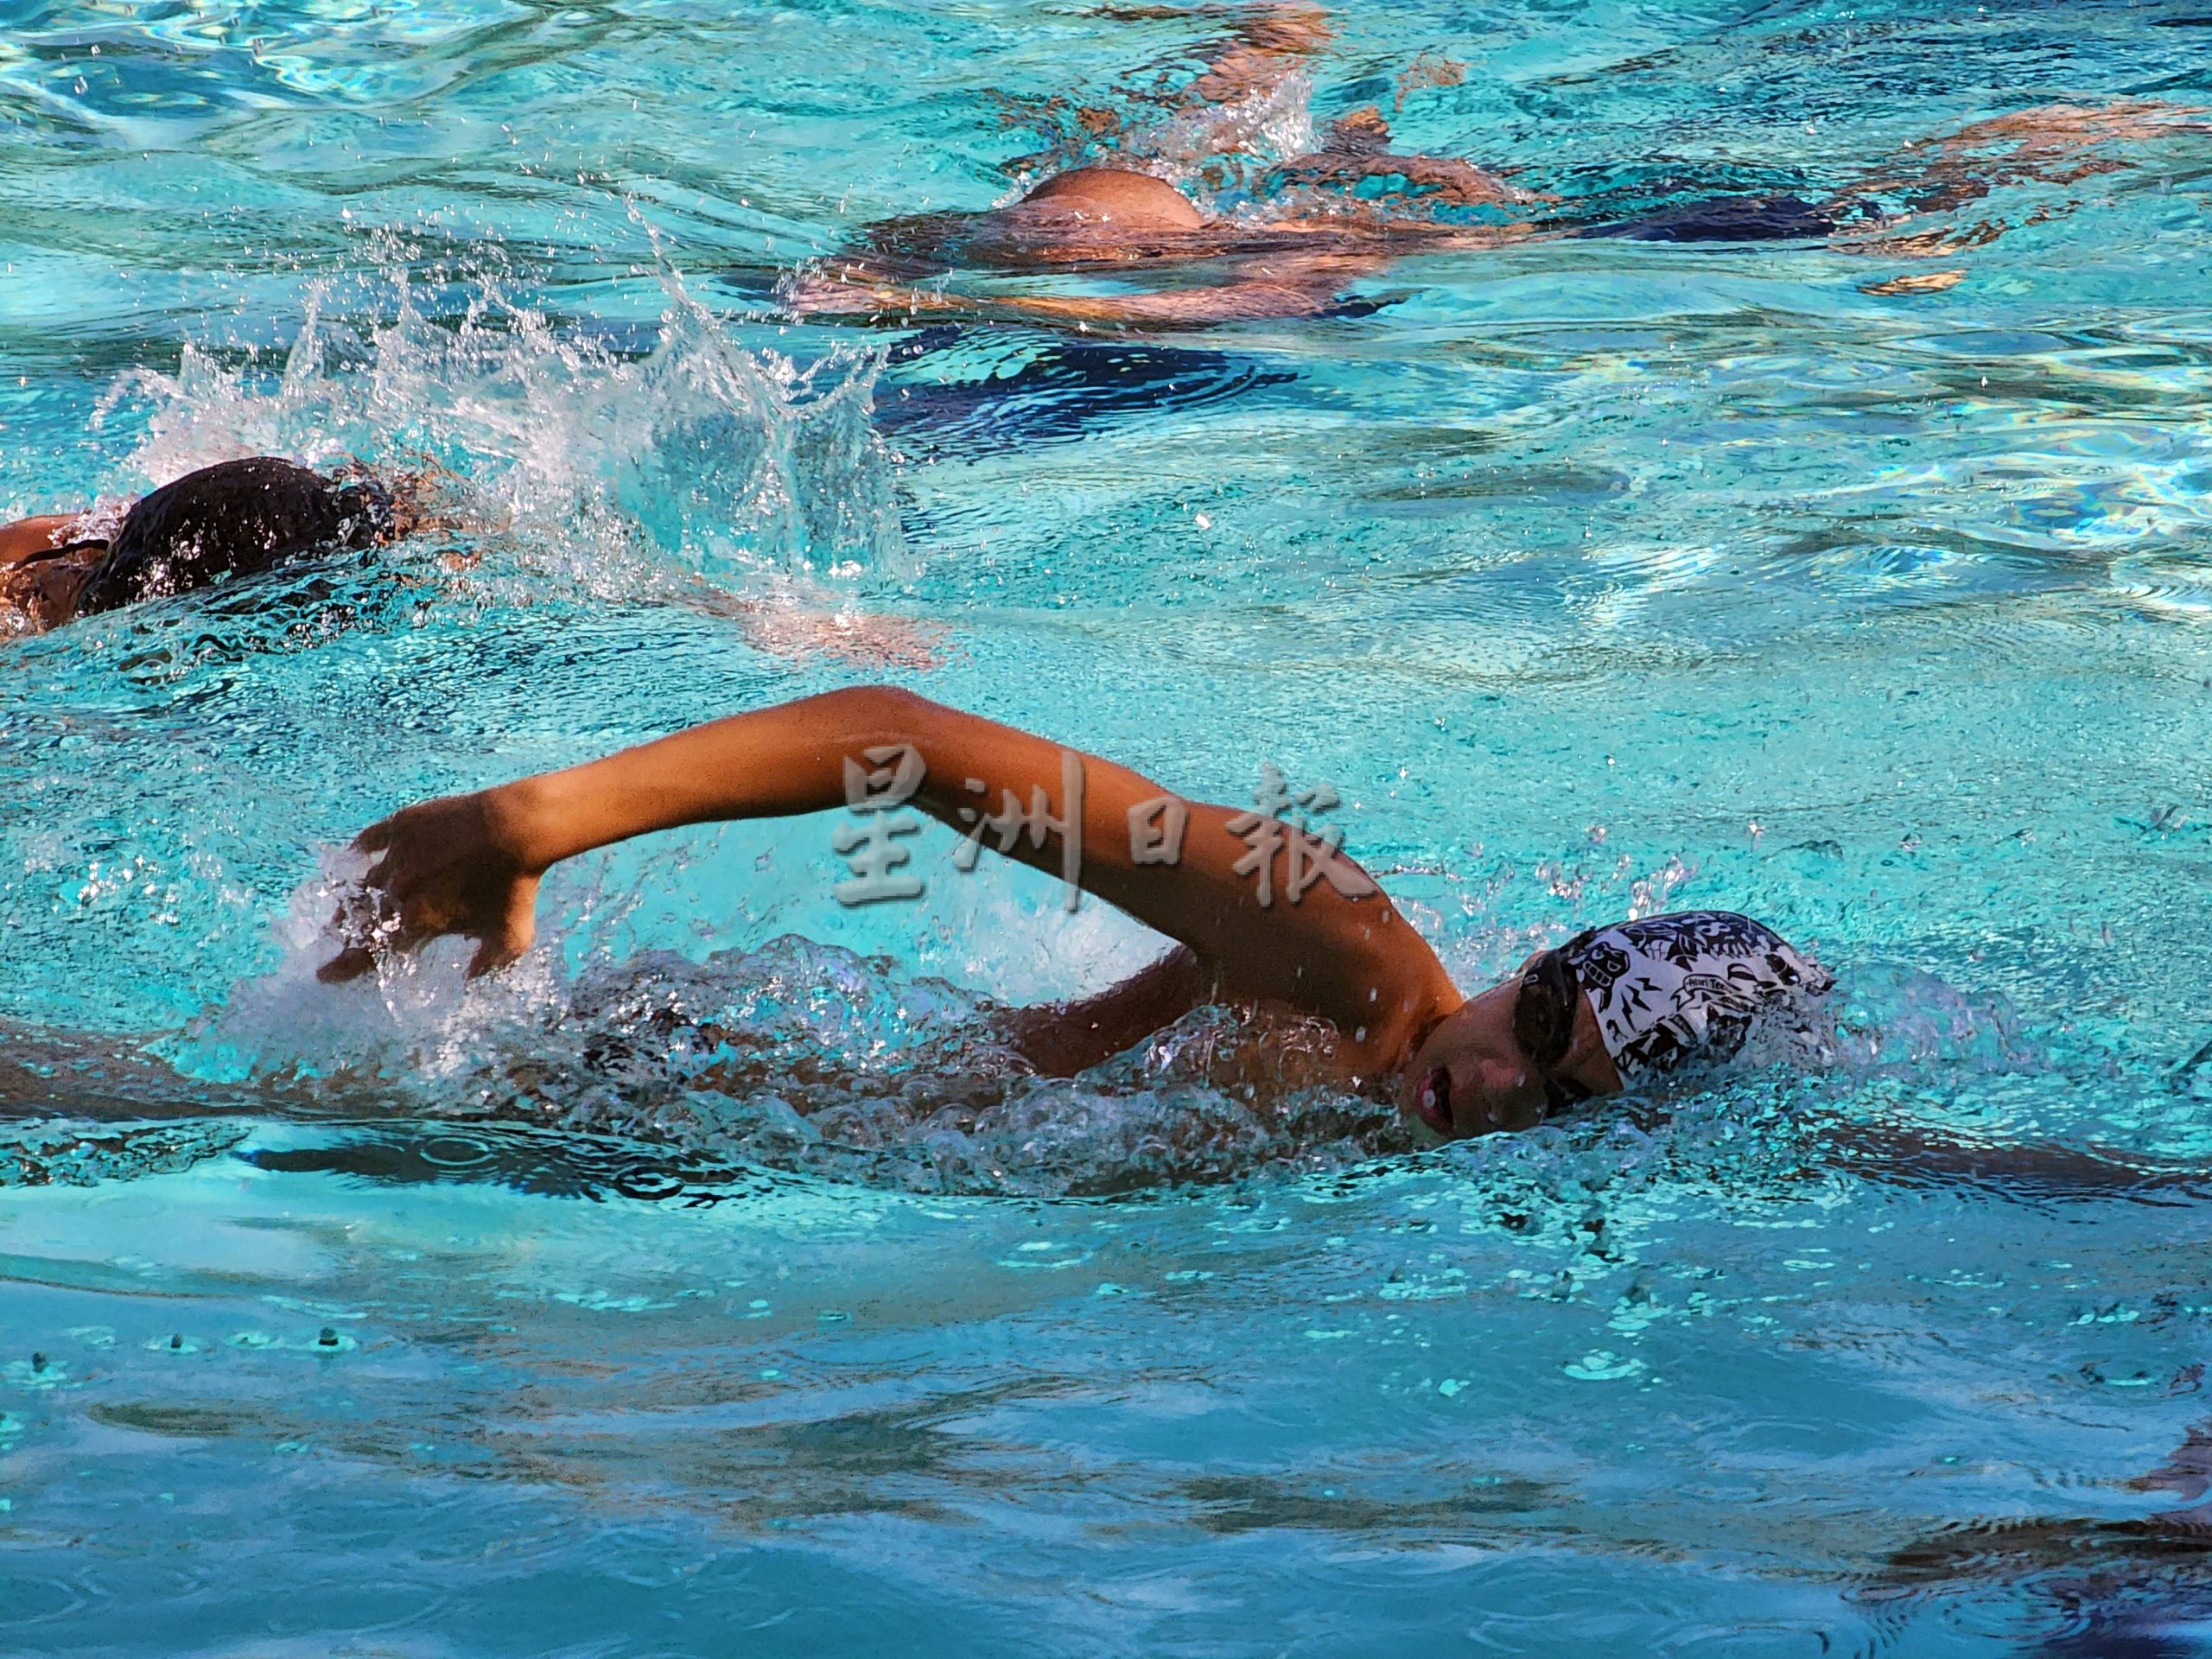 （古城第二版主文）专栏《你动摇了吗》：学习游泳先培养兴趣及根据情况选择泳式